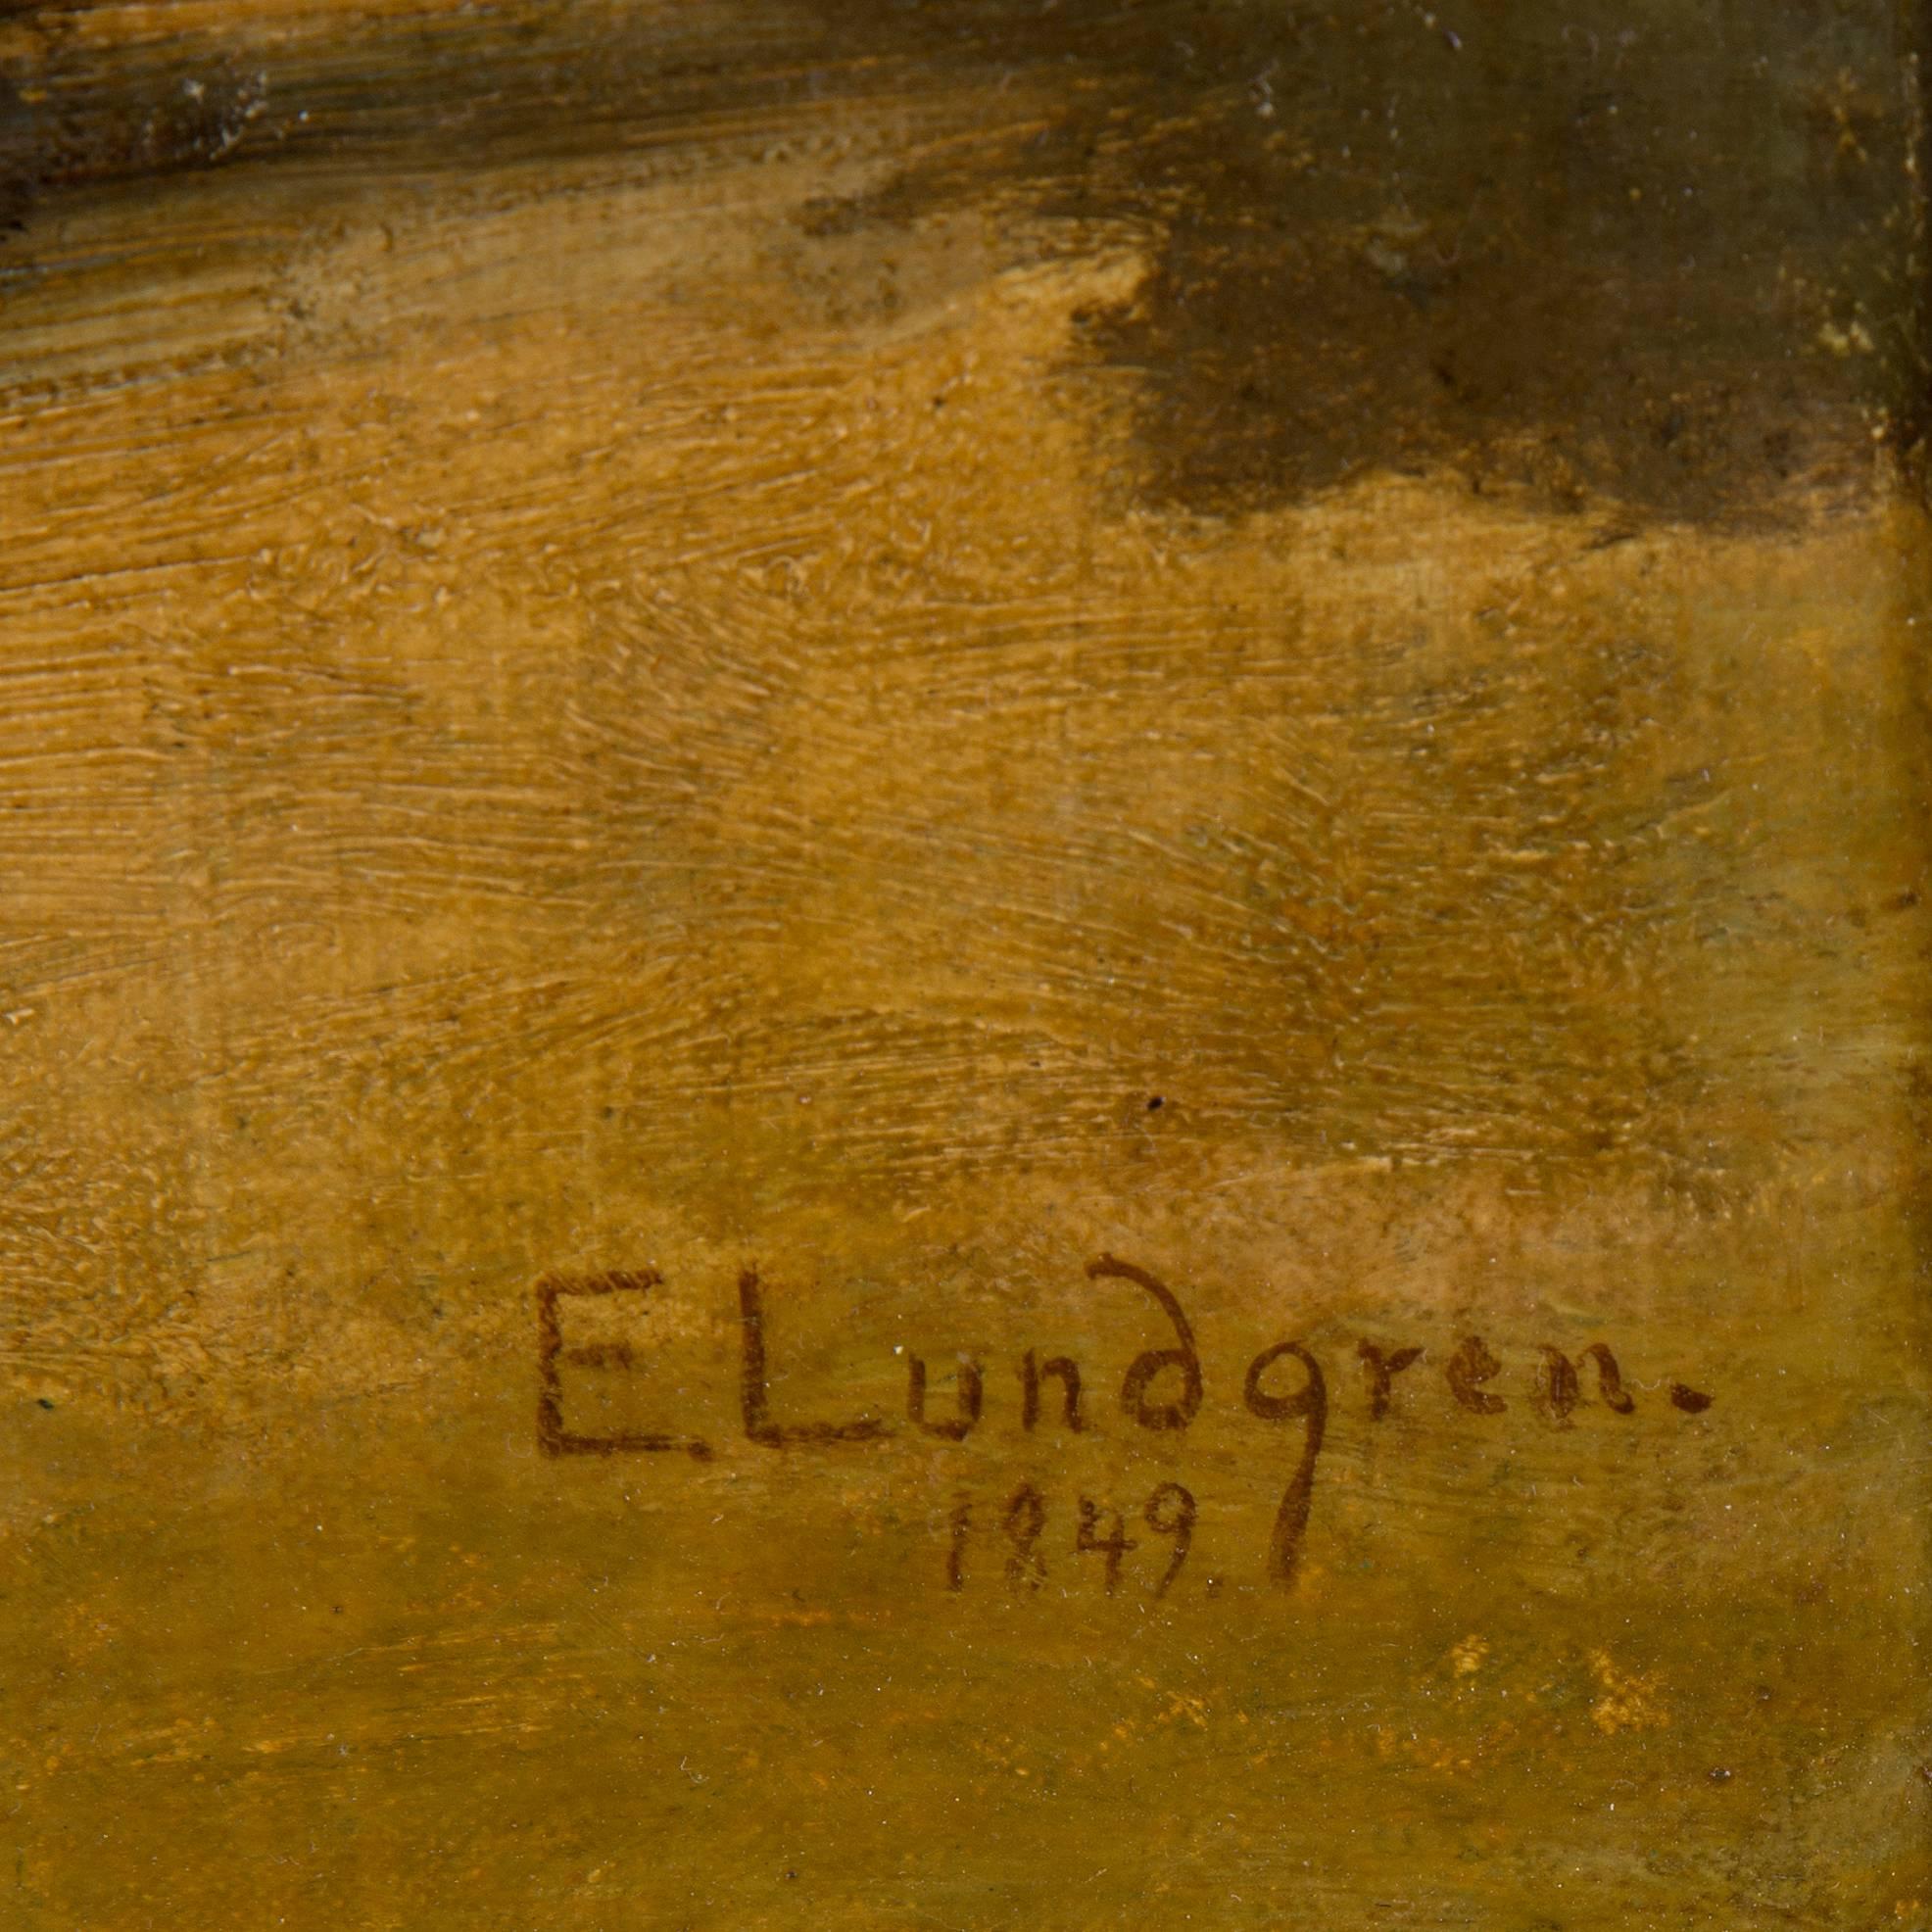 Egron Lundgren, Öl auf unterfütterter Leinwand, signiert und datiert 1849.
Abmessungen:
46 x 38 cm.